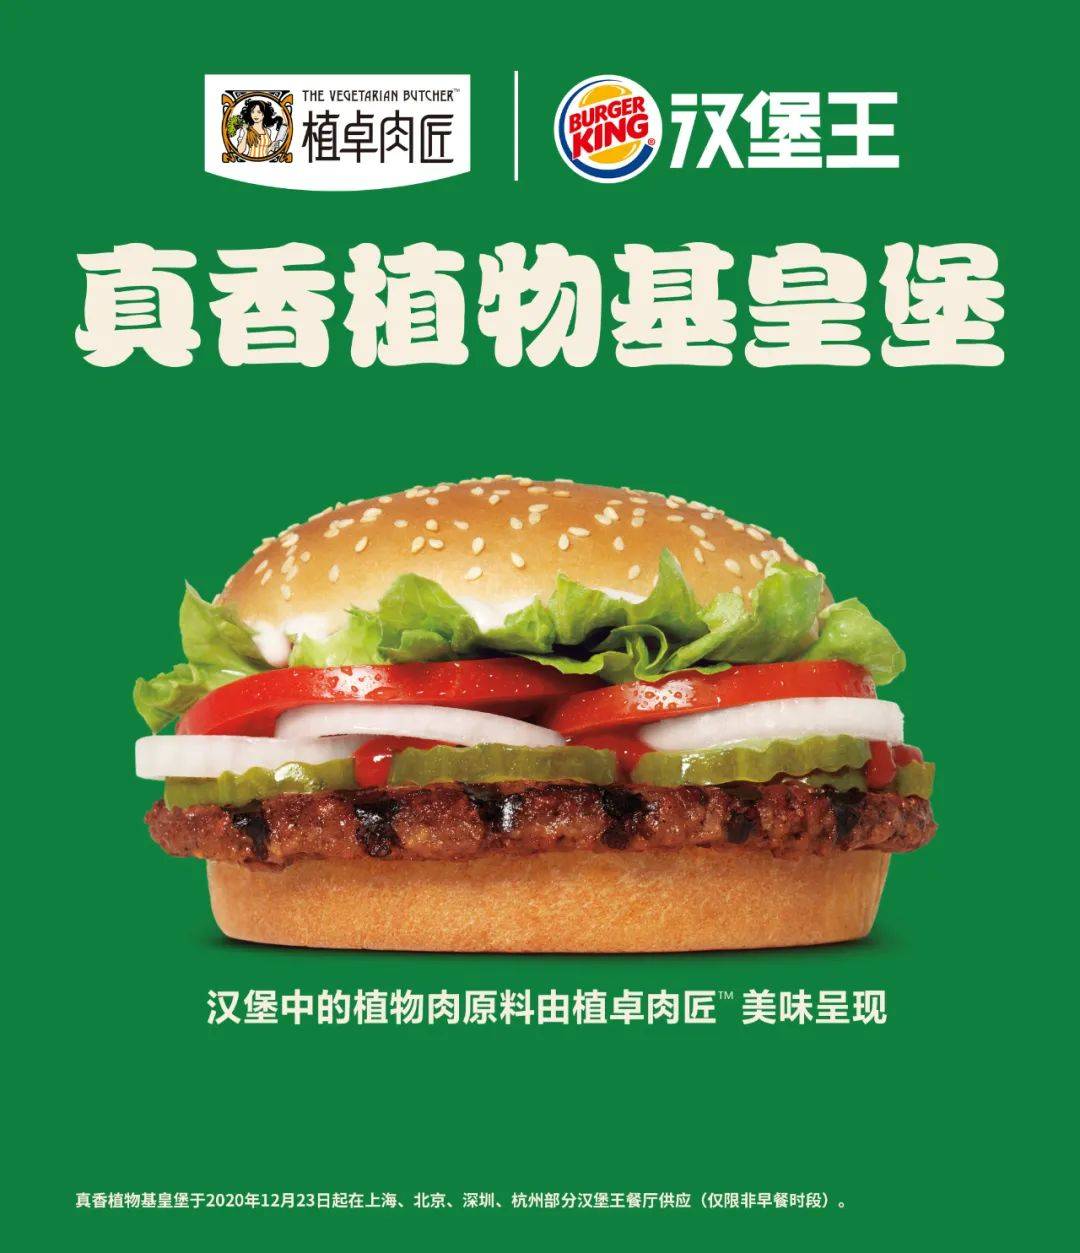 联合利华在中国开卖植物肉了！联手汉堡王出击